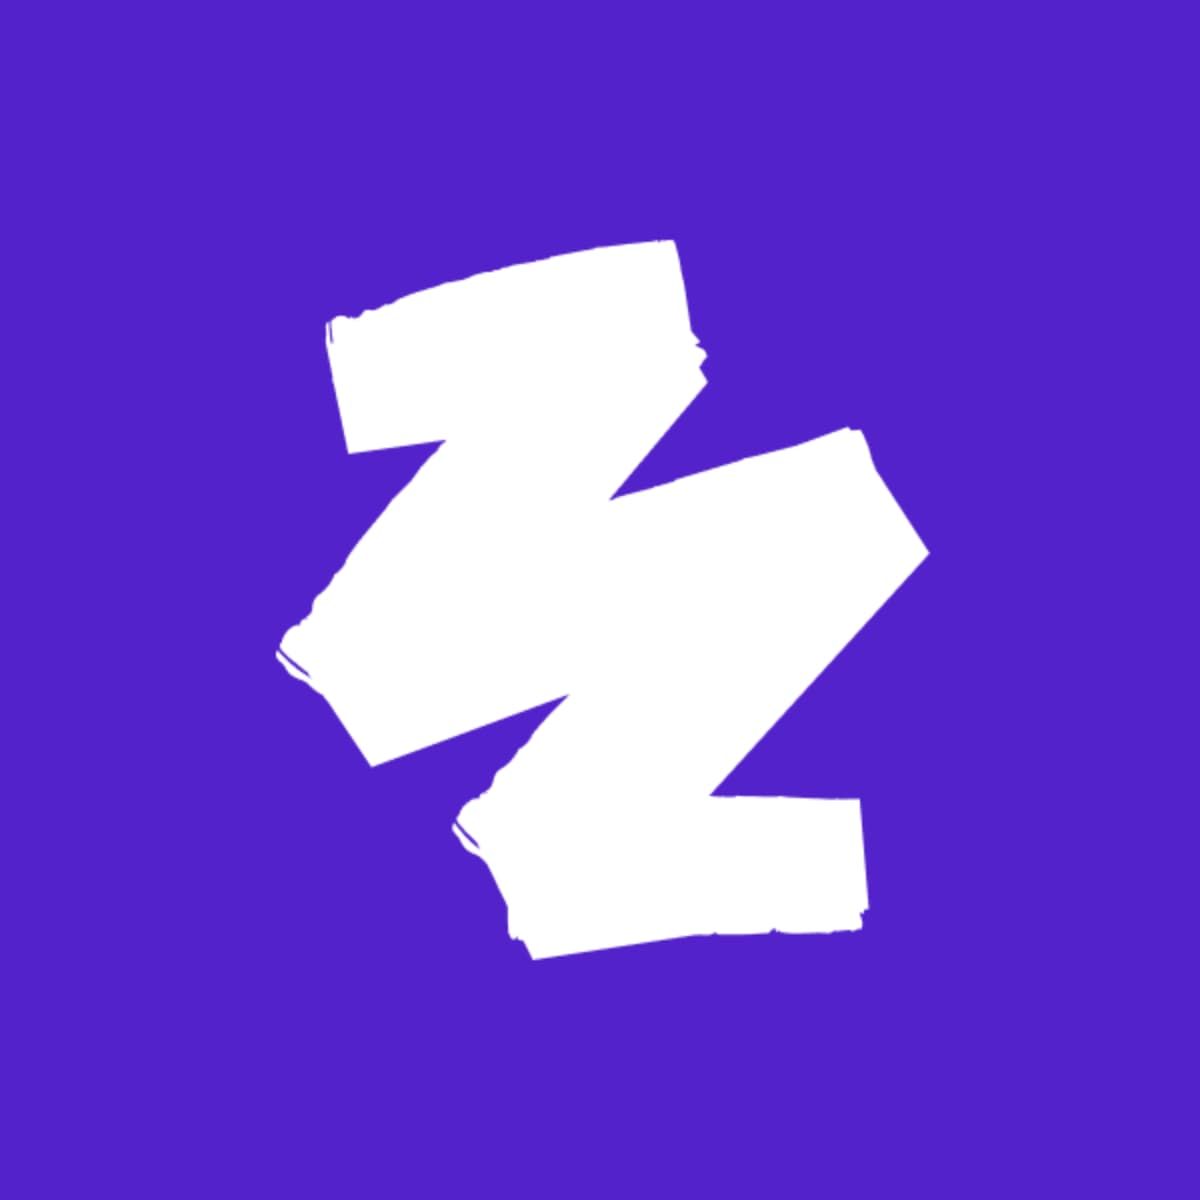 zazzy's logo